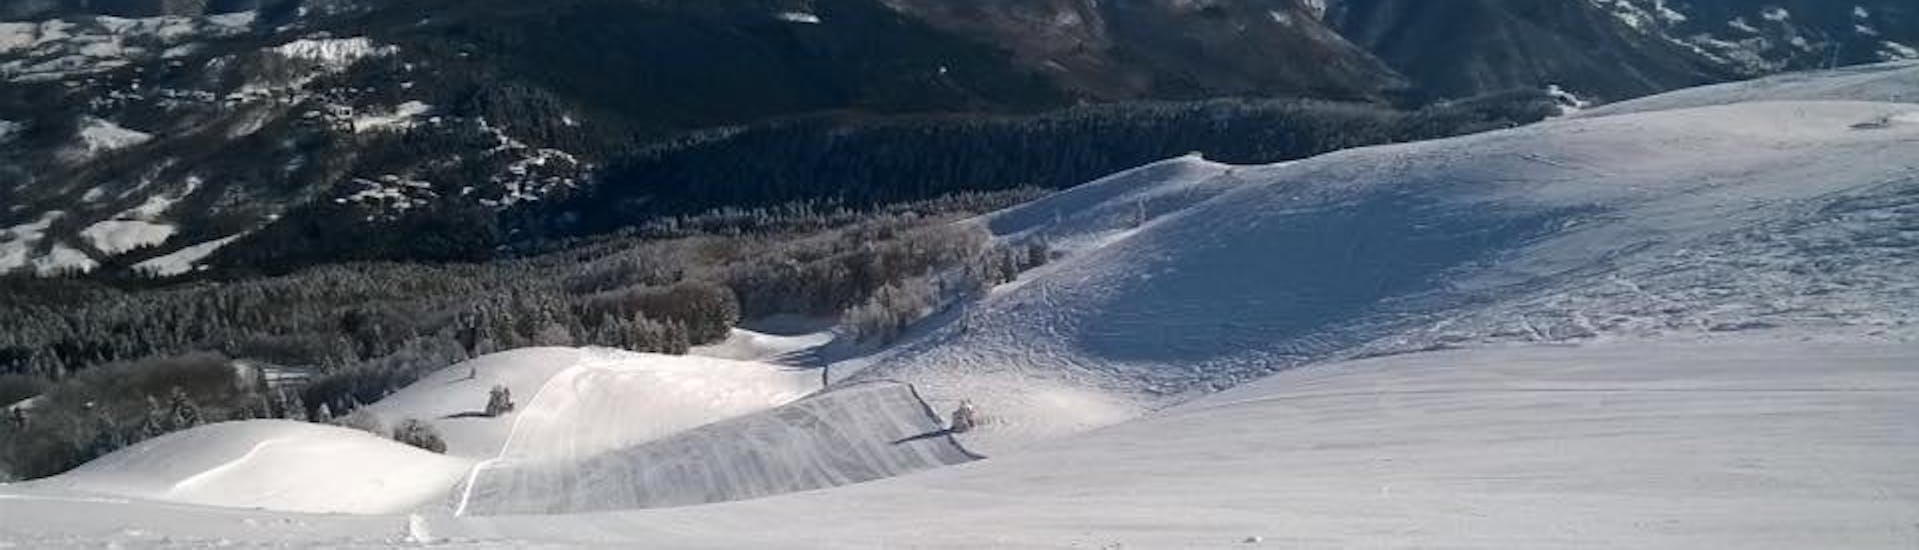 Montagne all'Abetone, ambiente perfetto per una delle lezioni private di sci per bambini di tutti i livelli.